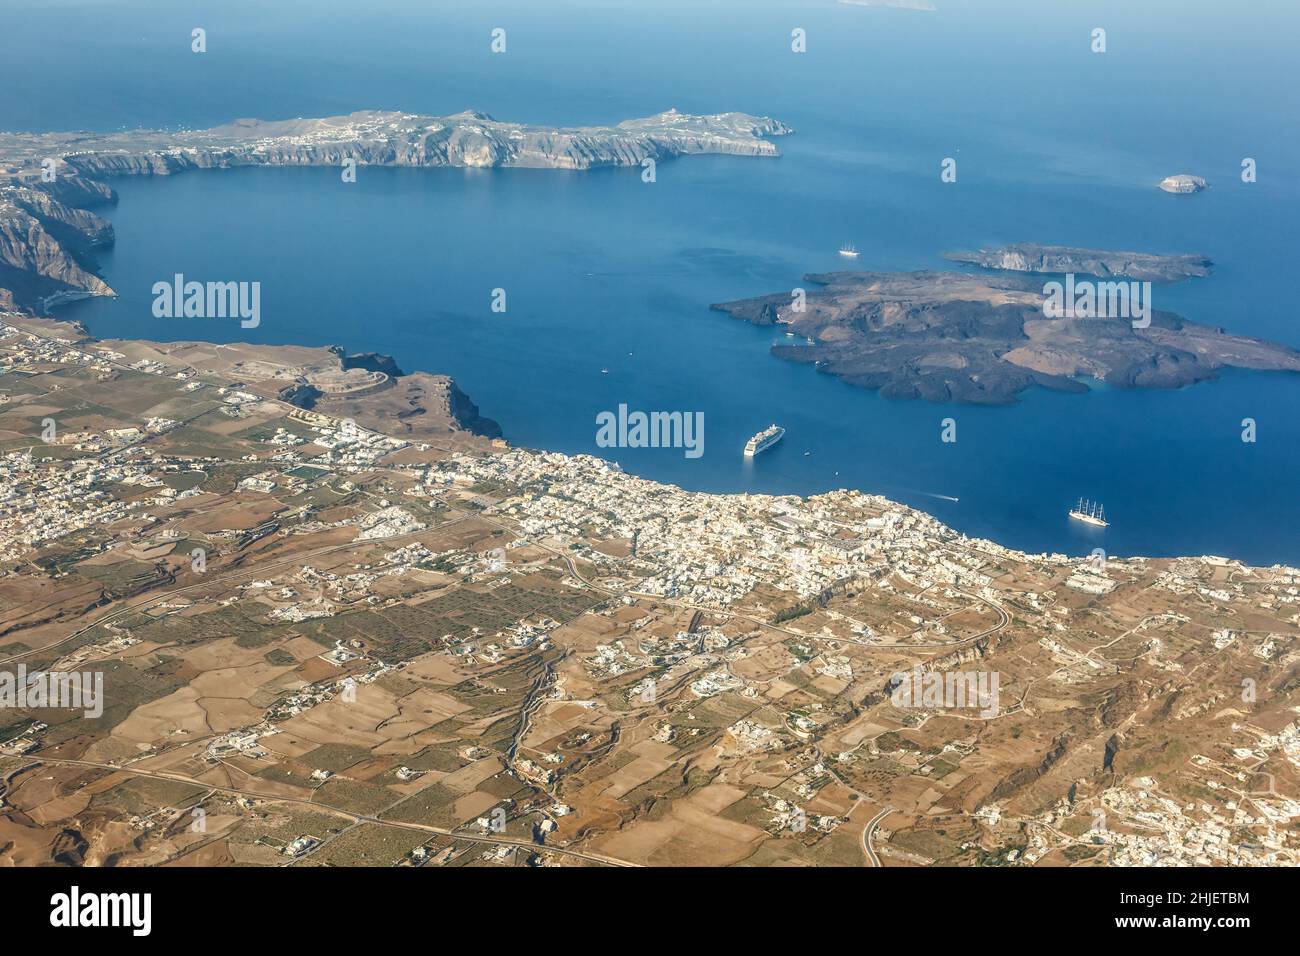 Vacances sur l'île de Santorini en Grèce voyage voyage Fira Thera ville Méditerranée Mer vue photo aérienne navire Santorin Banque D'Images